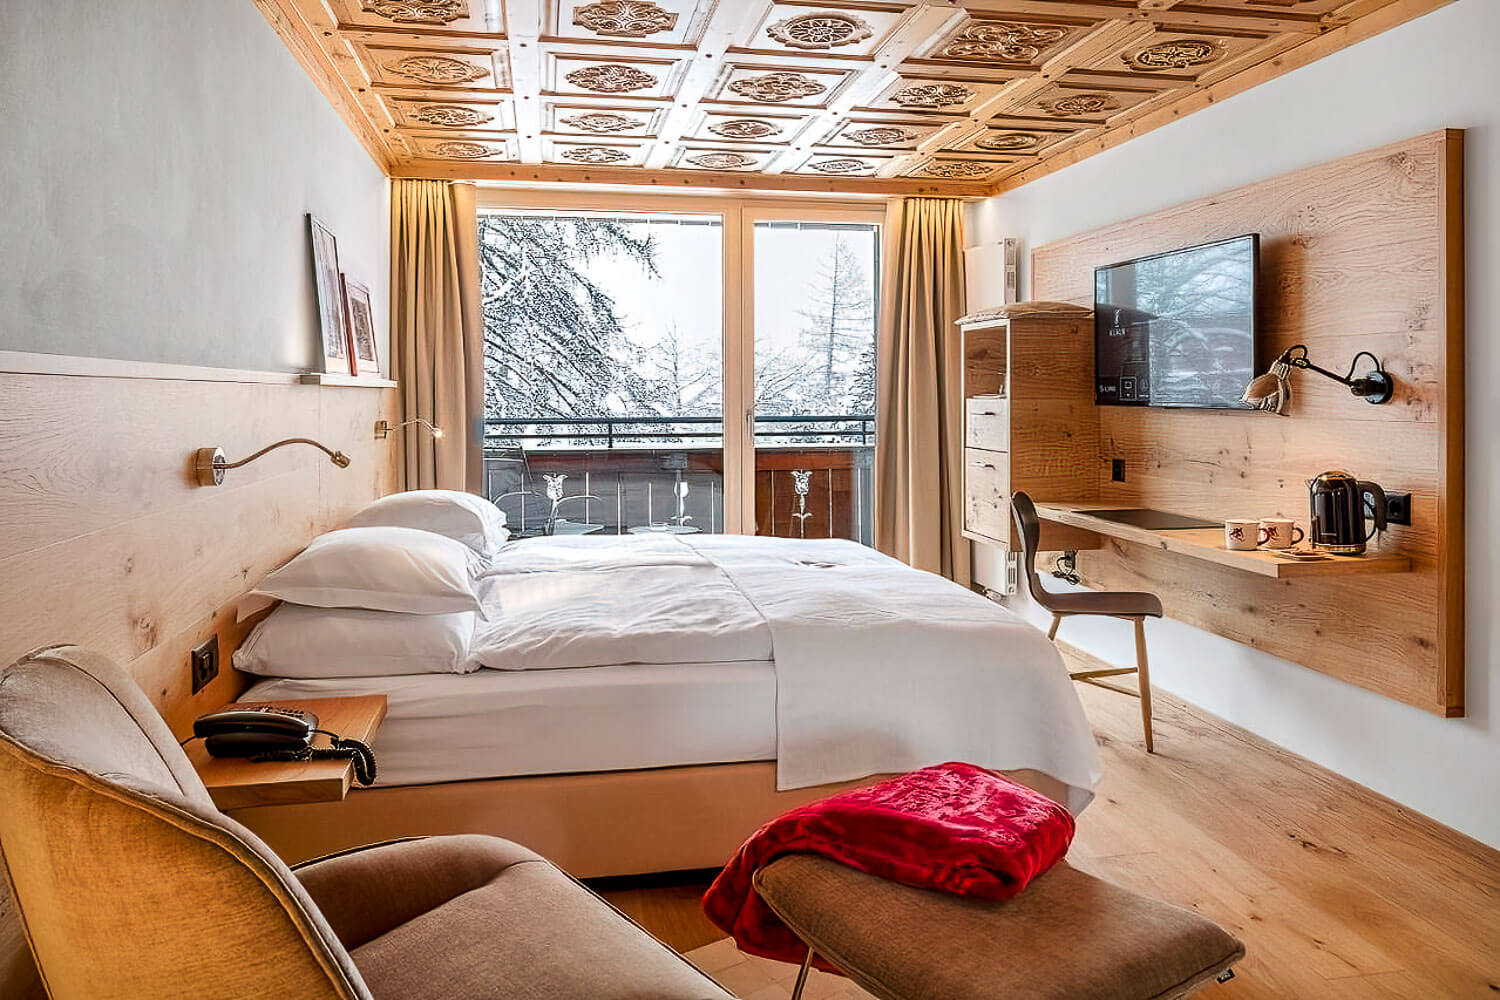 Swiss Alpine Hotel Allalin in Zermatt